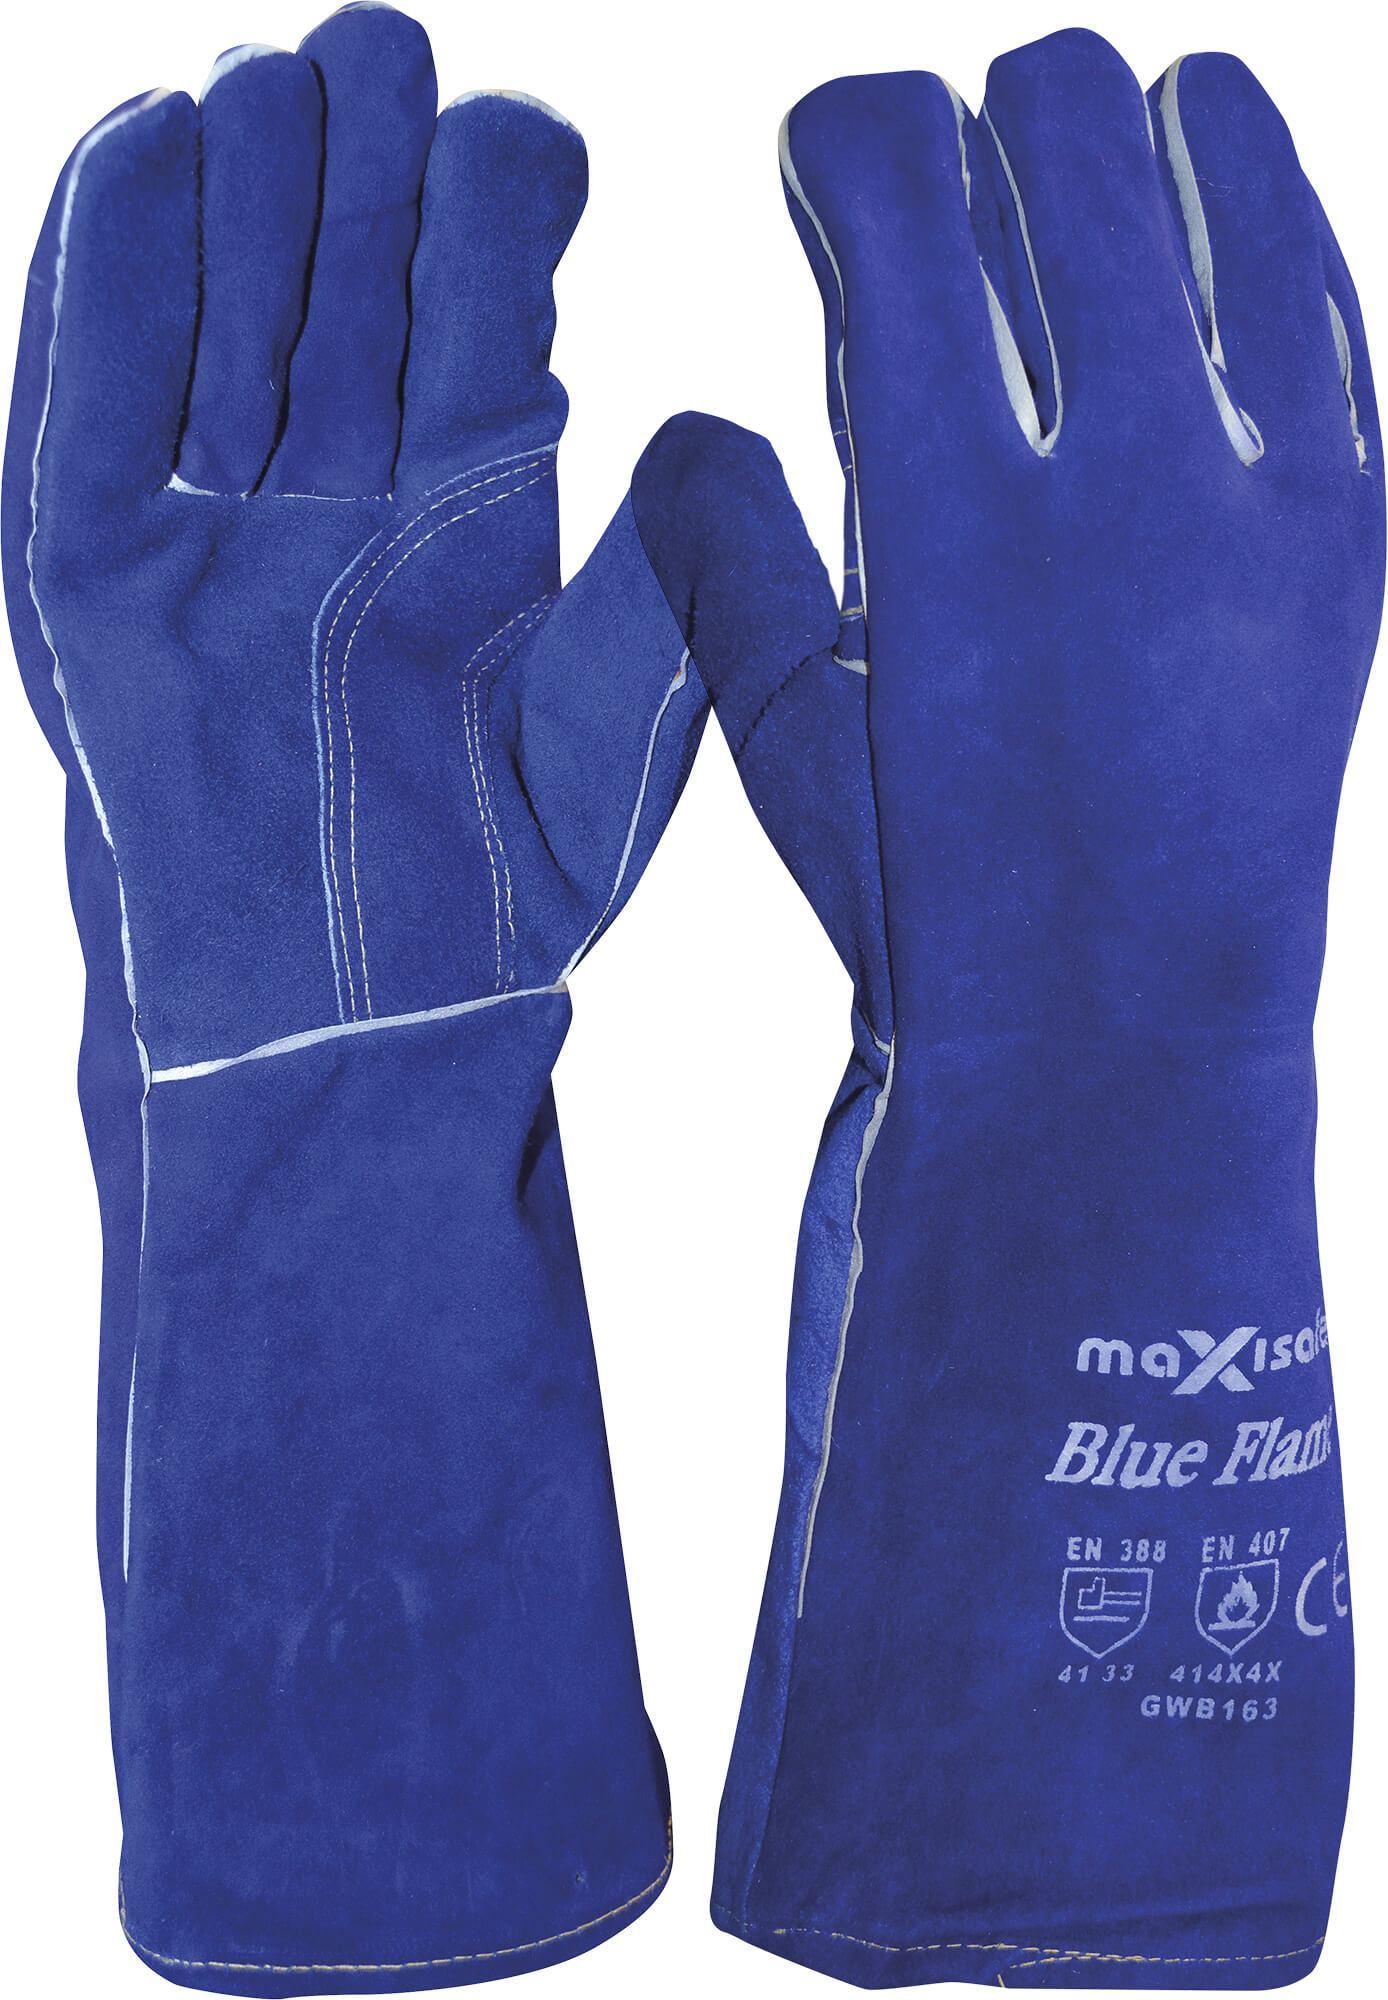 GWB163c ‘Blue Flame’ Premium Kevlar Welder’s Glove